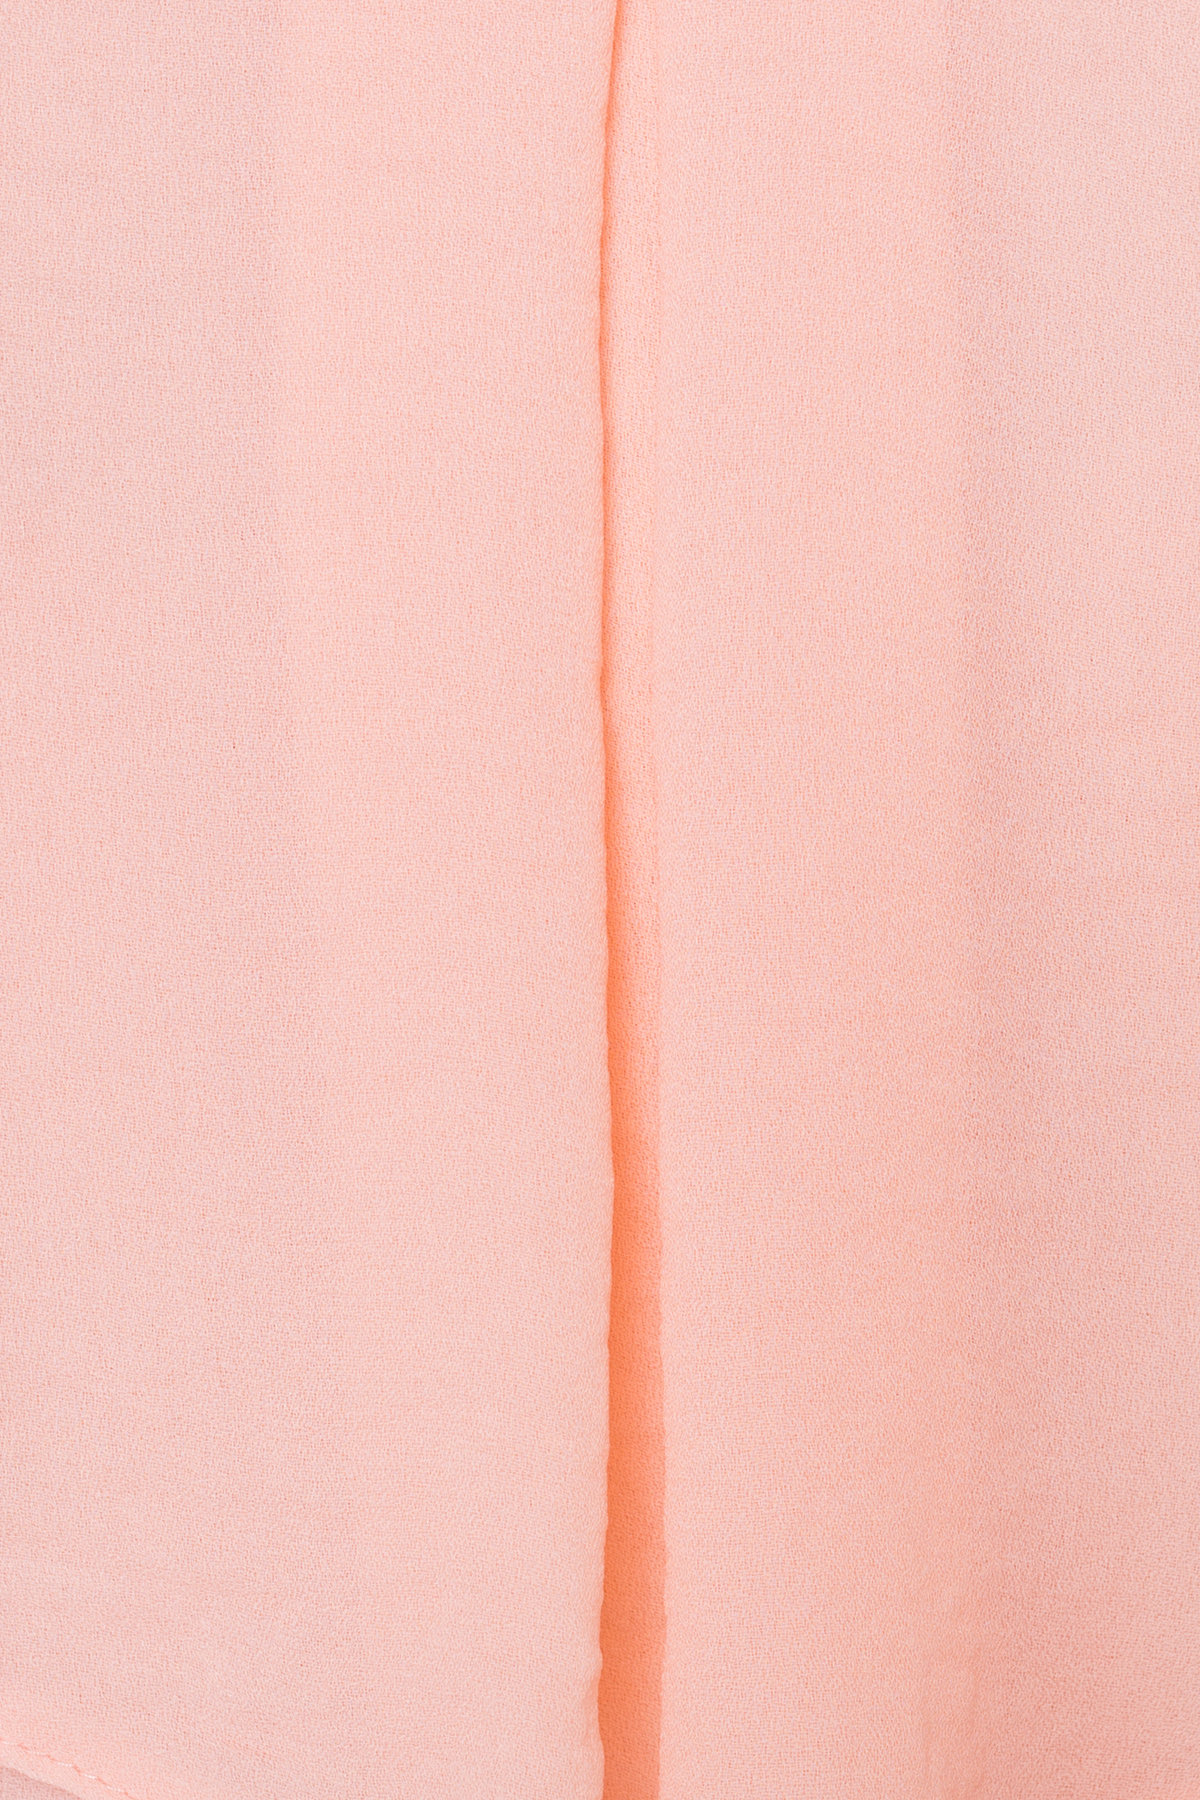 TW Платье Восток 5123 Цвет: Персик